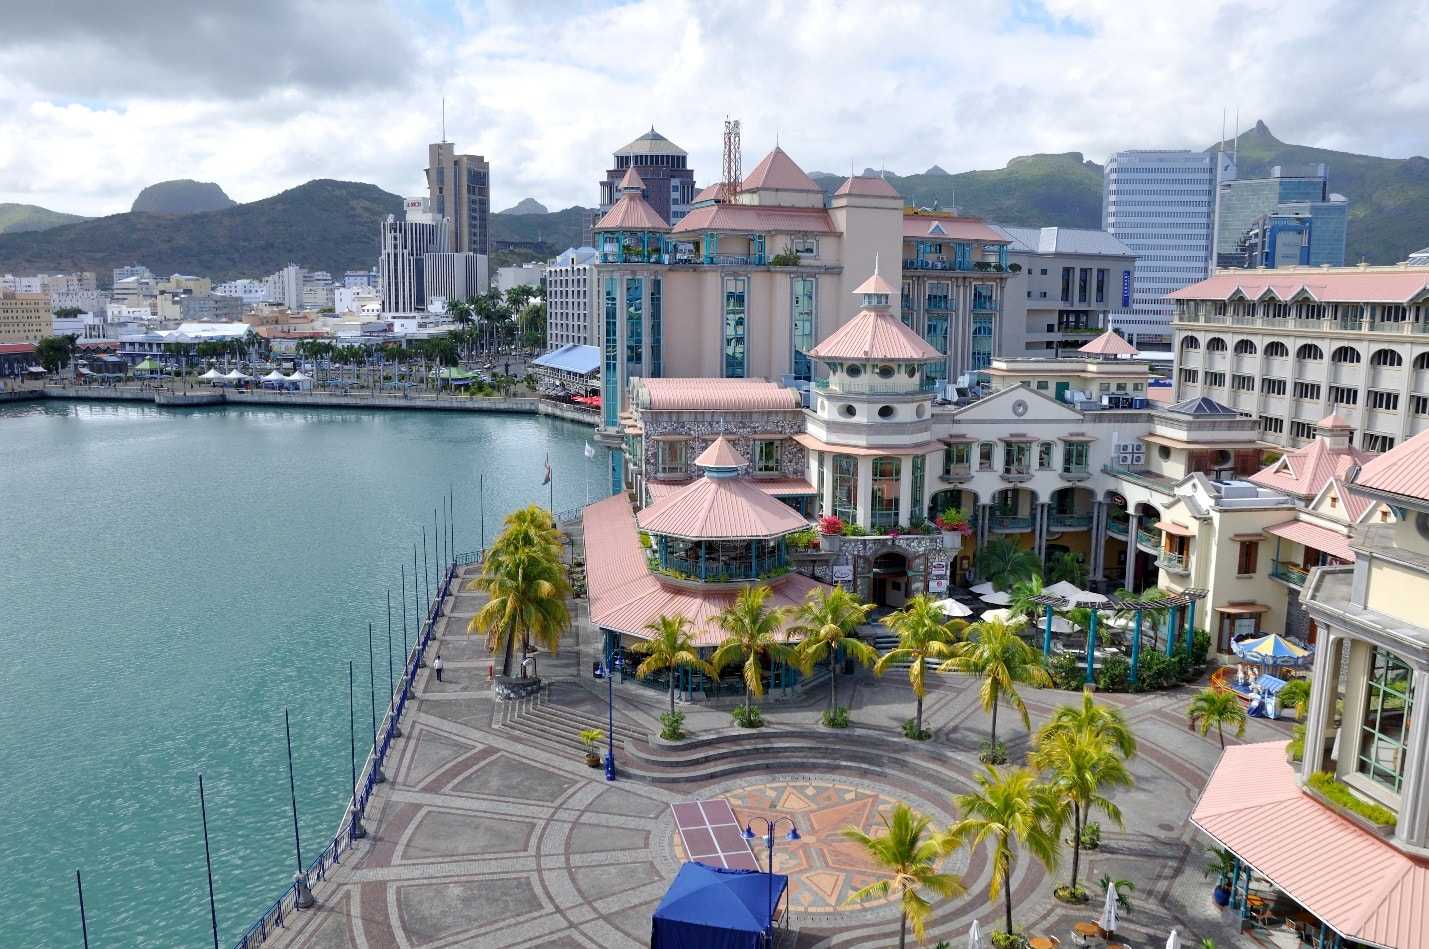 Столицей и одним из главных курортных городов Маврикия является Порт-Луи - необычайно красивый город, расположенный на северо-западном побережье острова Предлагаем вместе с нами отправиться в интересное путешествие по самым популярным достопримечательност